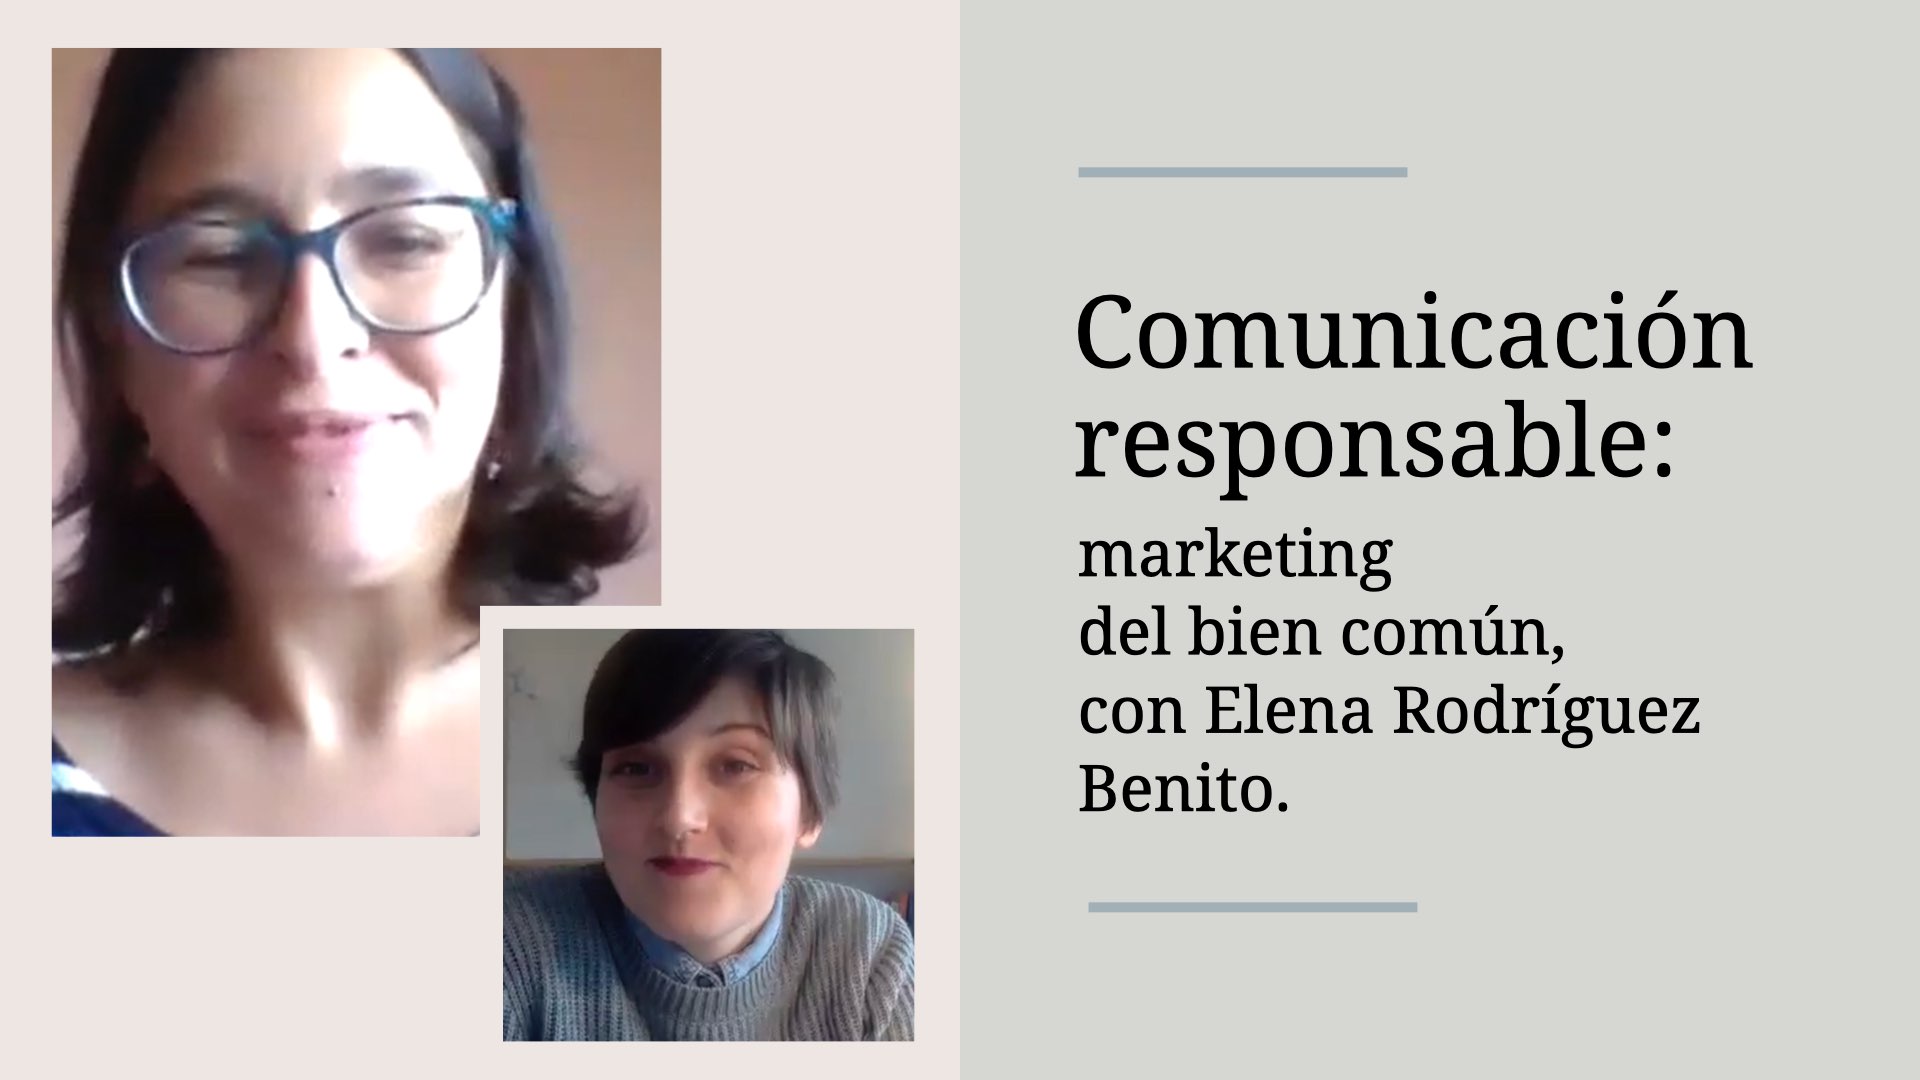 marketing-del-bien-comun-comunicacion-responsable-elena-rodriguez-benito-alba-sueiro-roman-blog